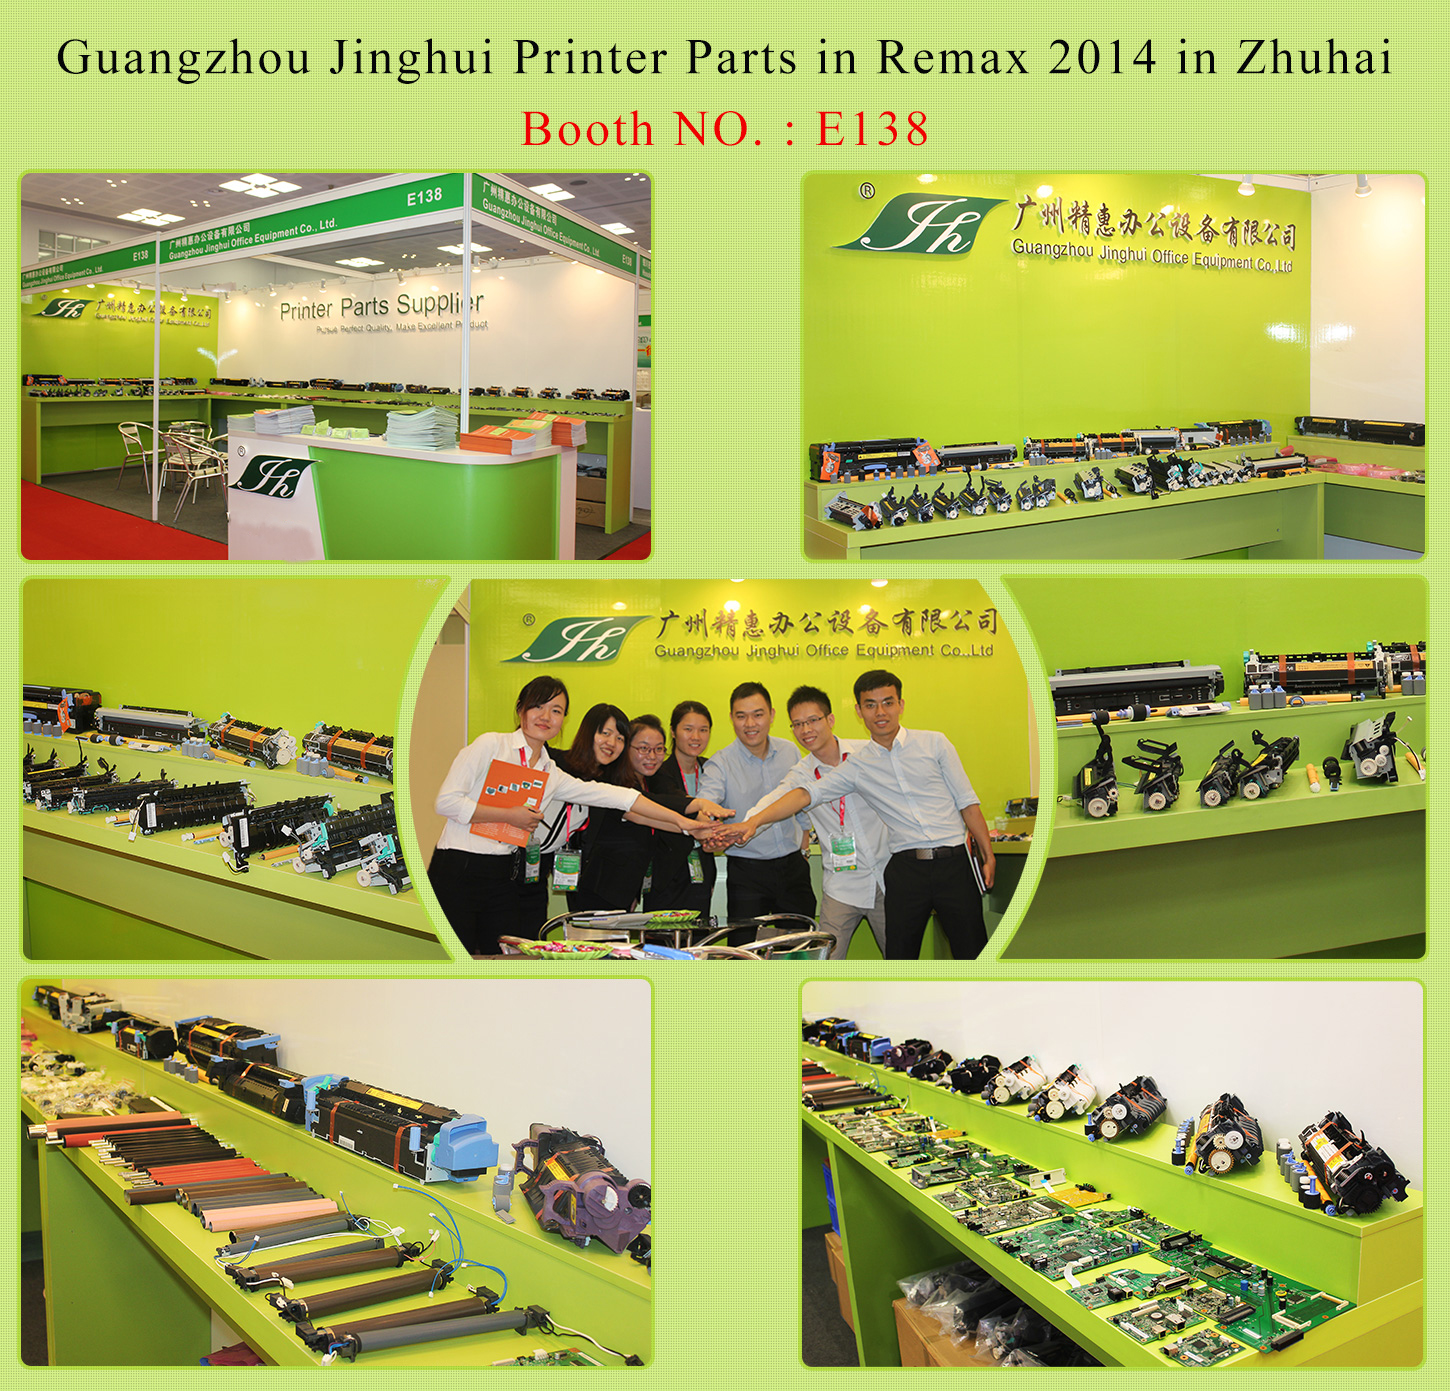 Guangzhou Jinghui Printer Parts in Remax 2014 in Zhuhai